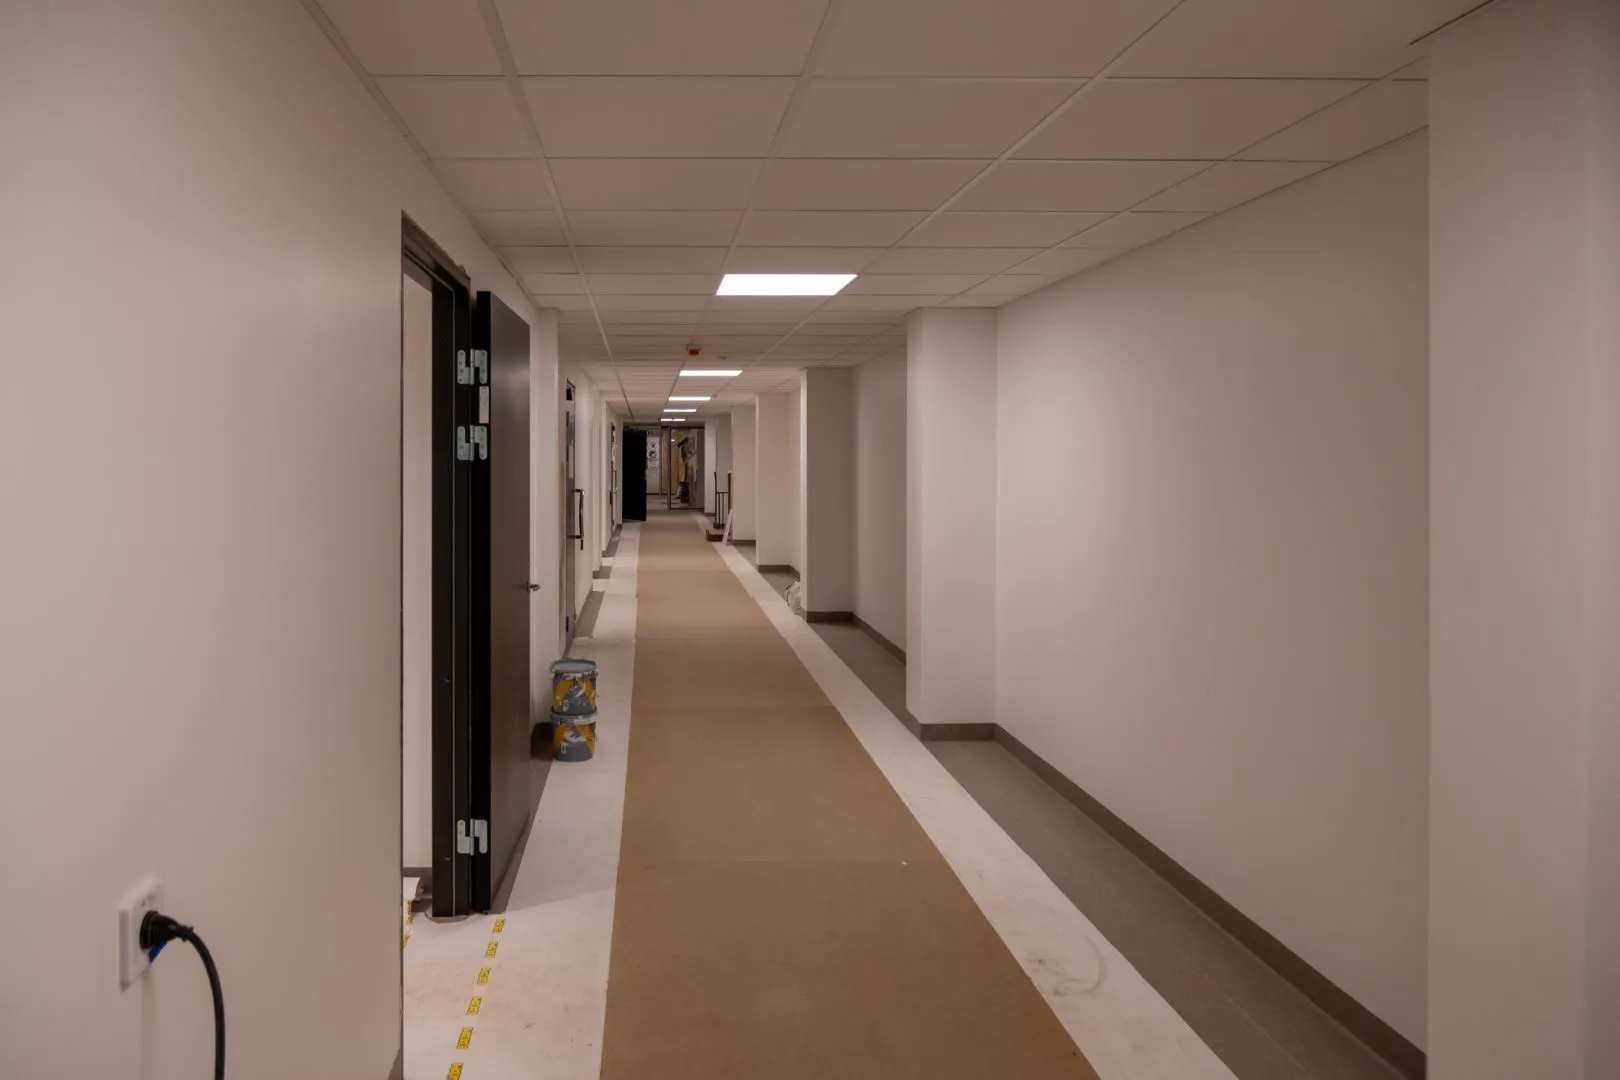 Vit korridor med golv skyddad av kartonger.